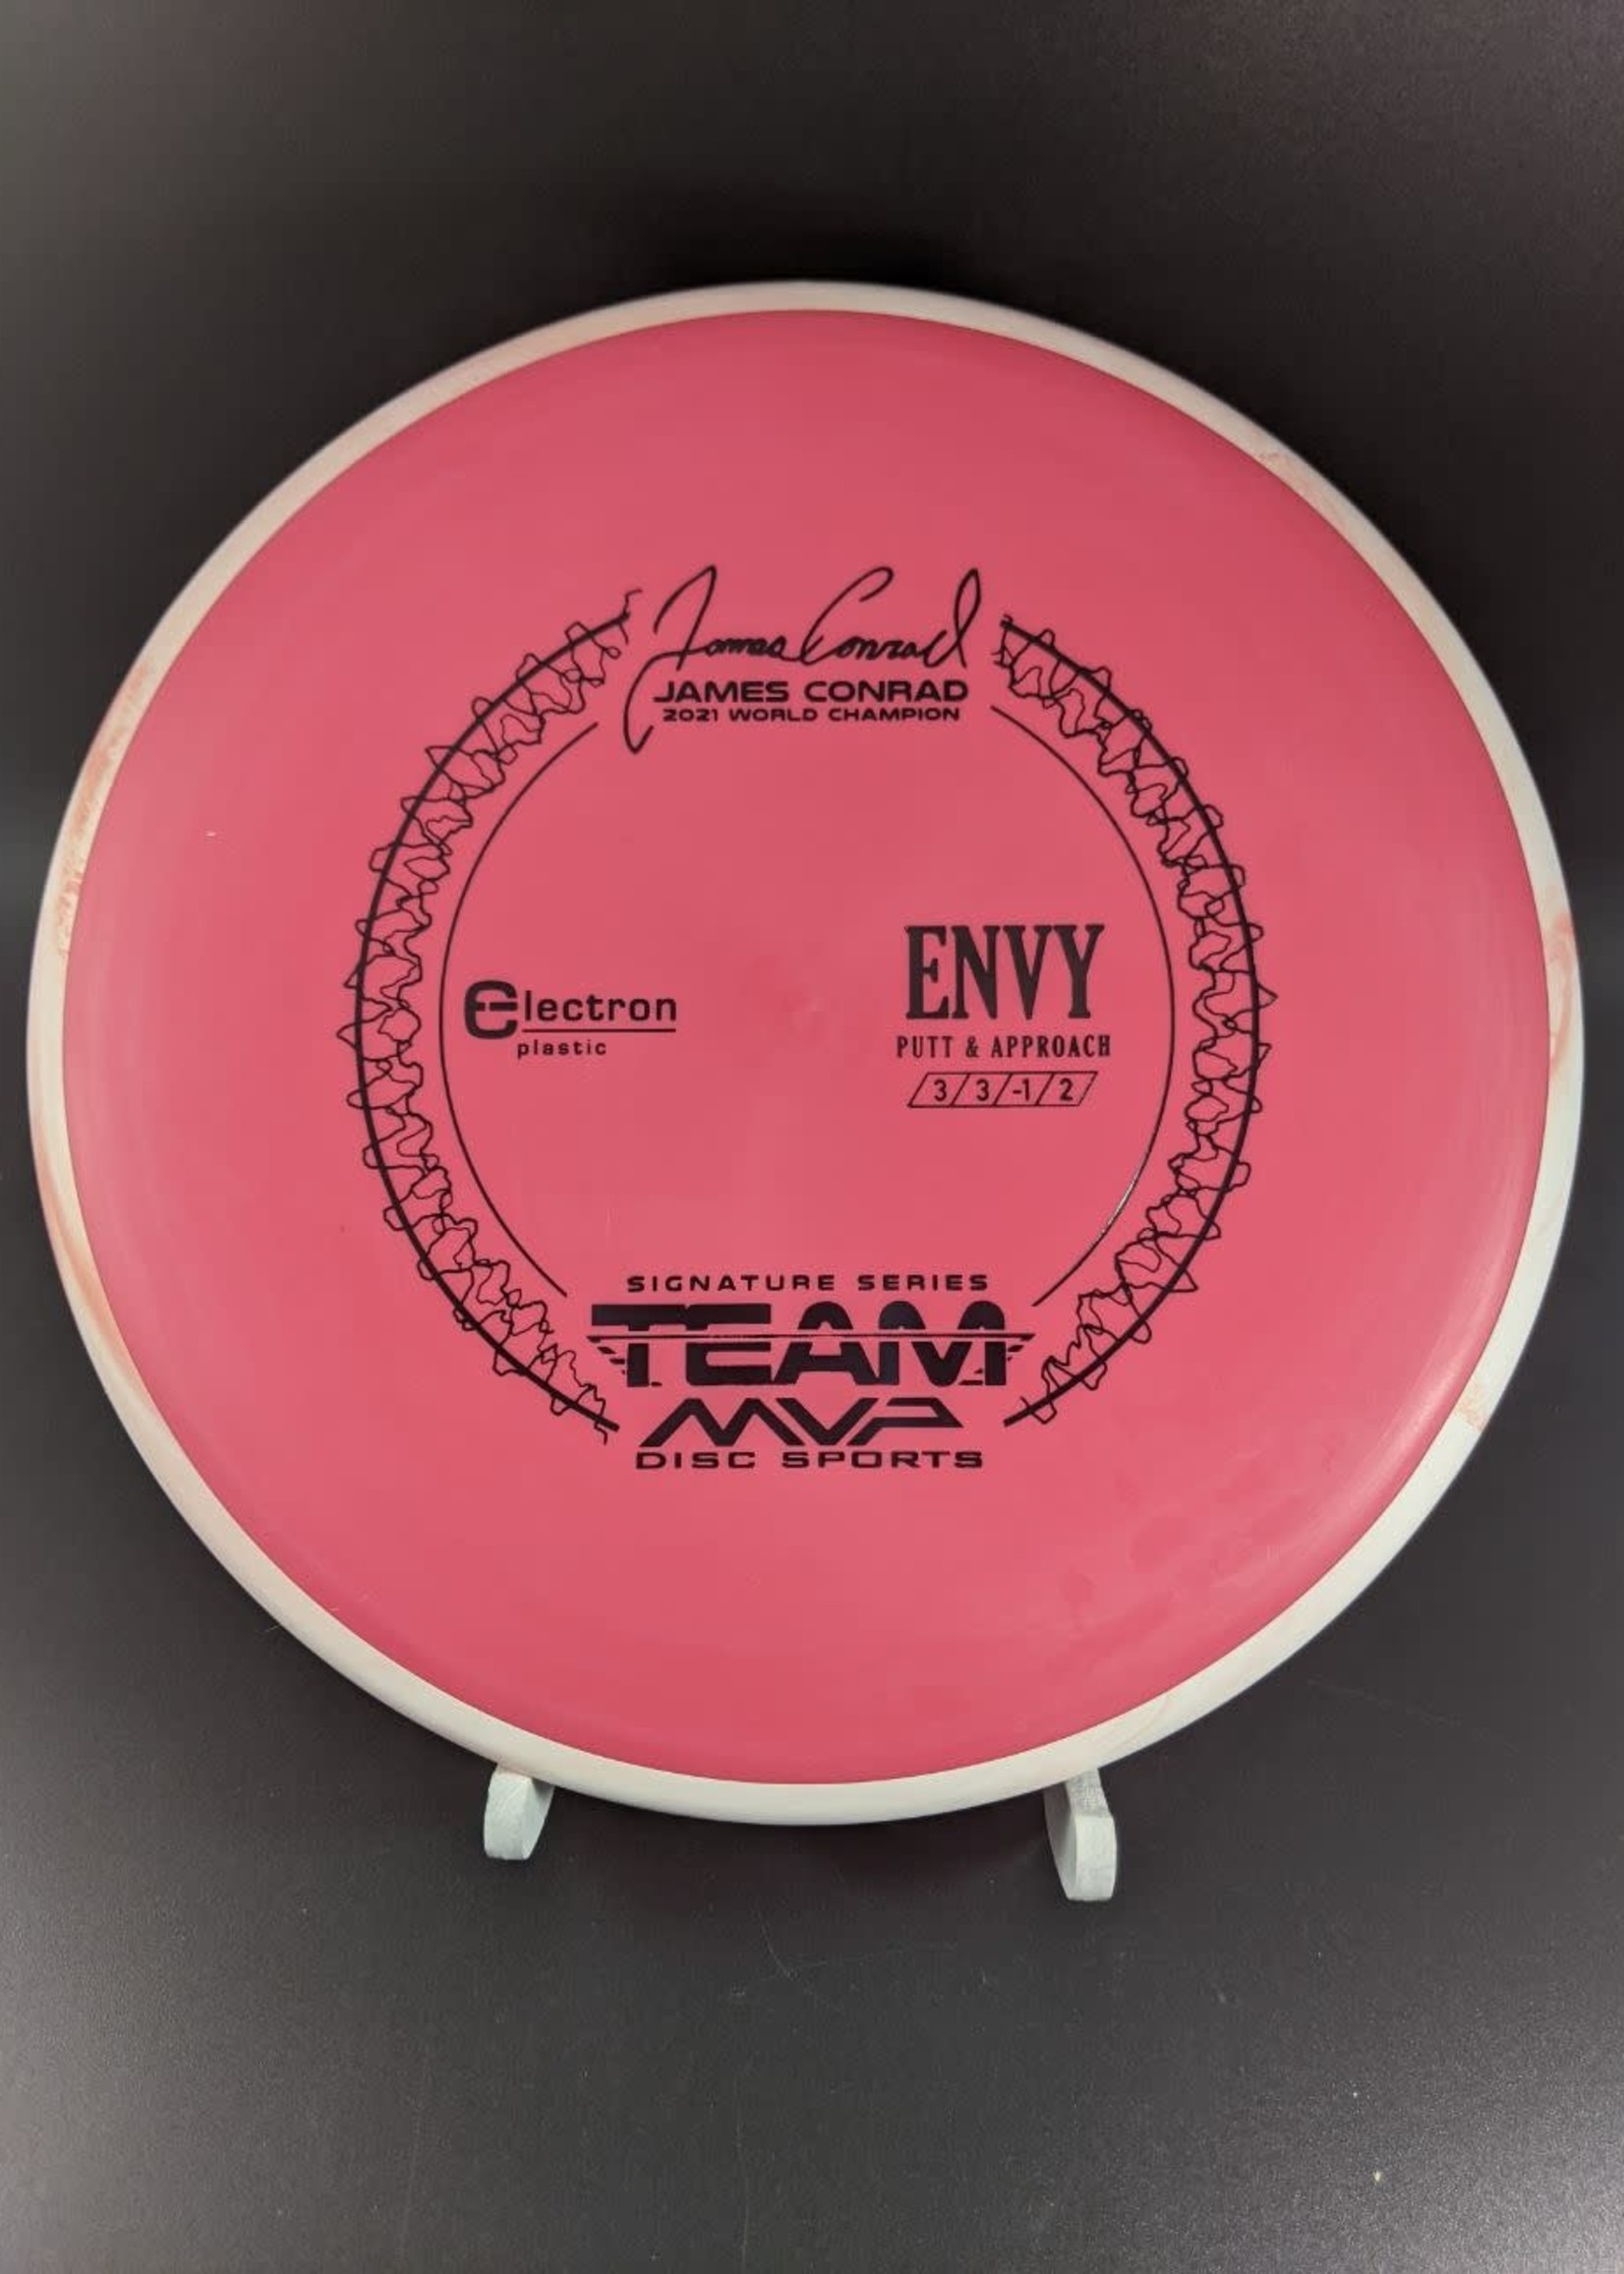 MVP Disc Sports Axiom Electron Envy - Team MVP James Conrad (pg. 3)